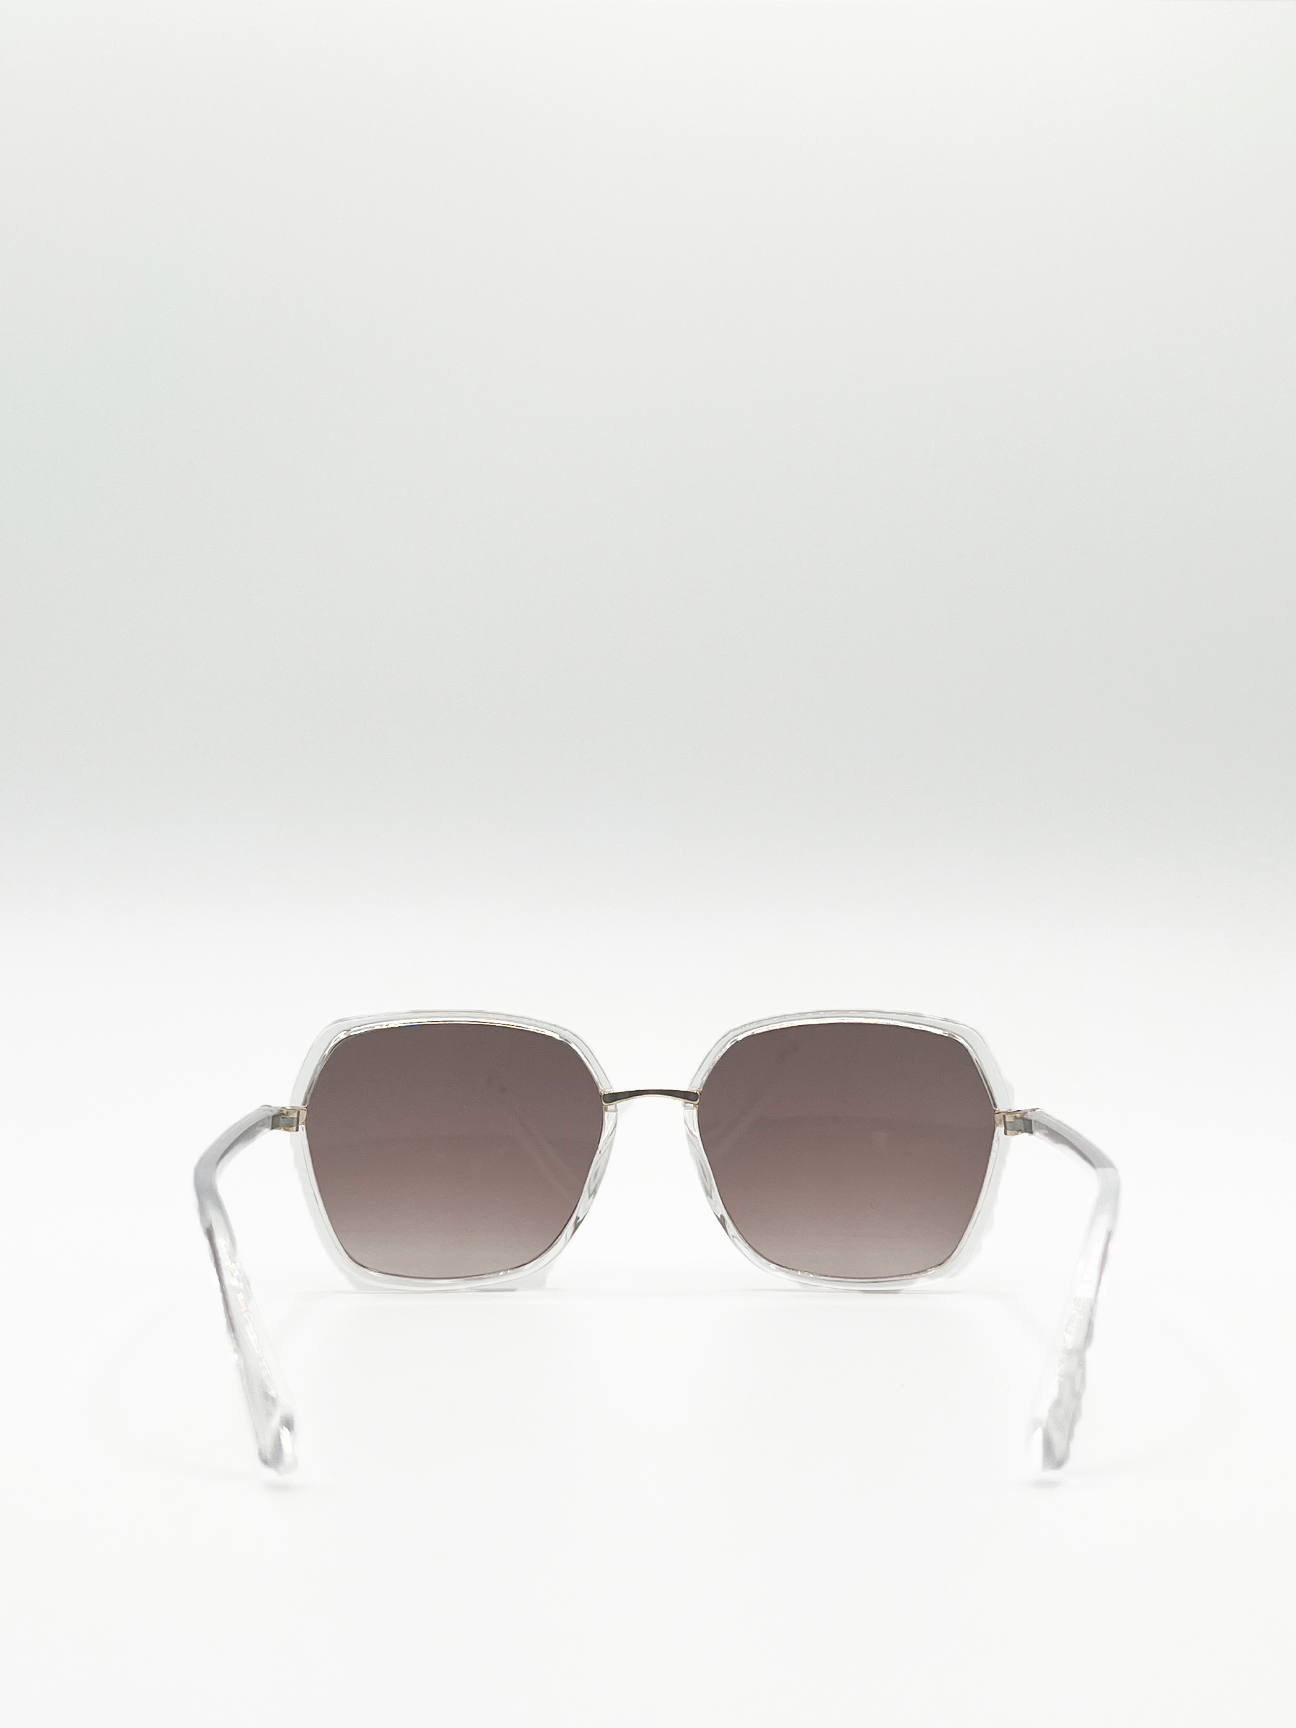 Gold Oversized Frame Sunglasses with Black Lenses